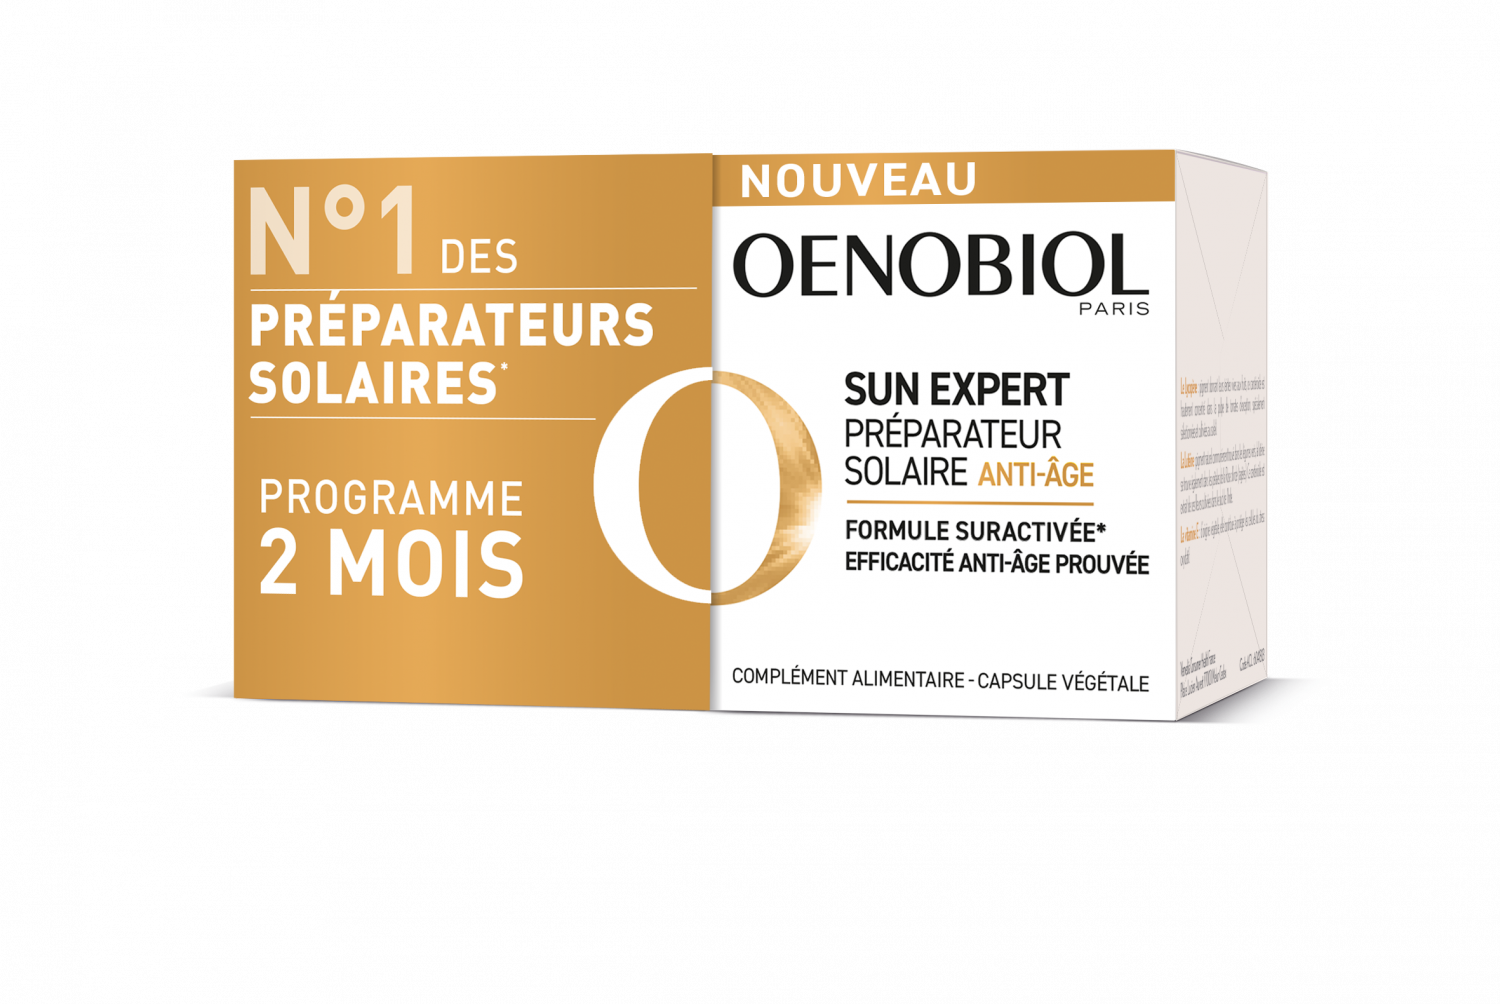 Sun Expert Préparateur Solaire Anti âge Oenobiol Complément